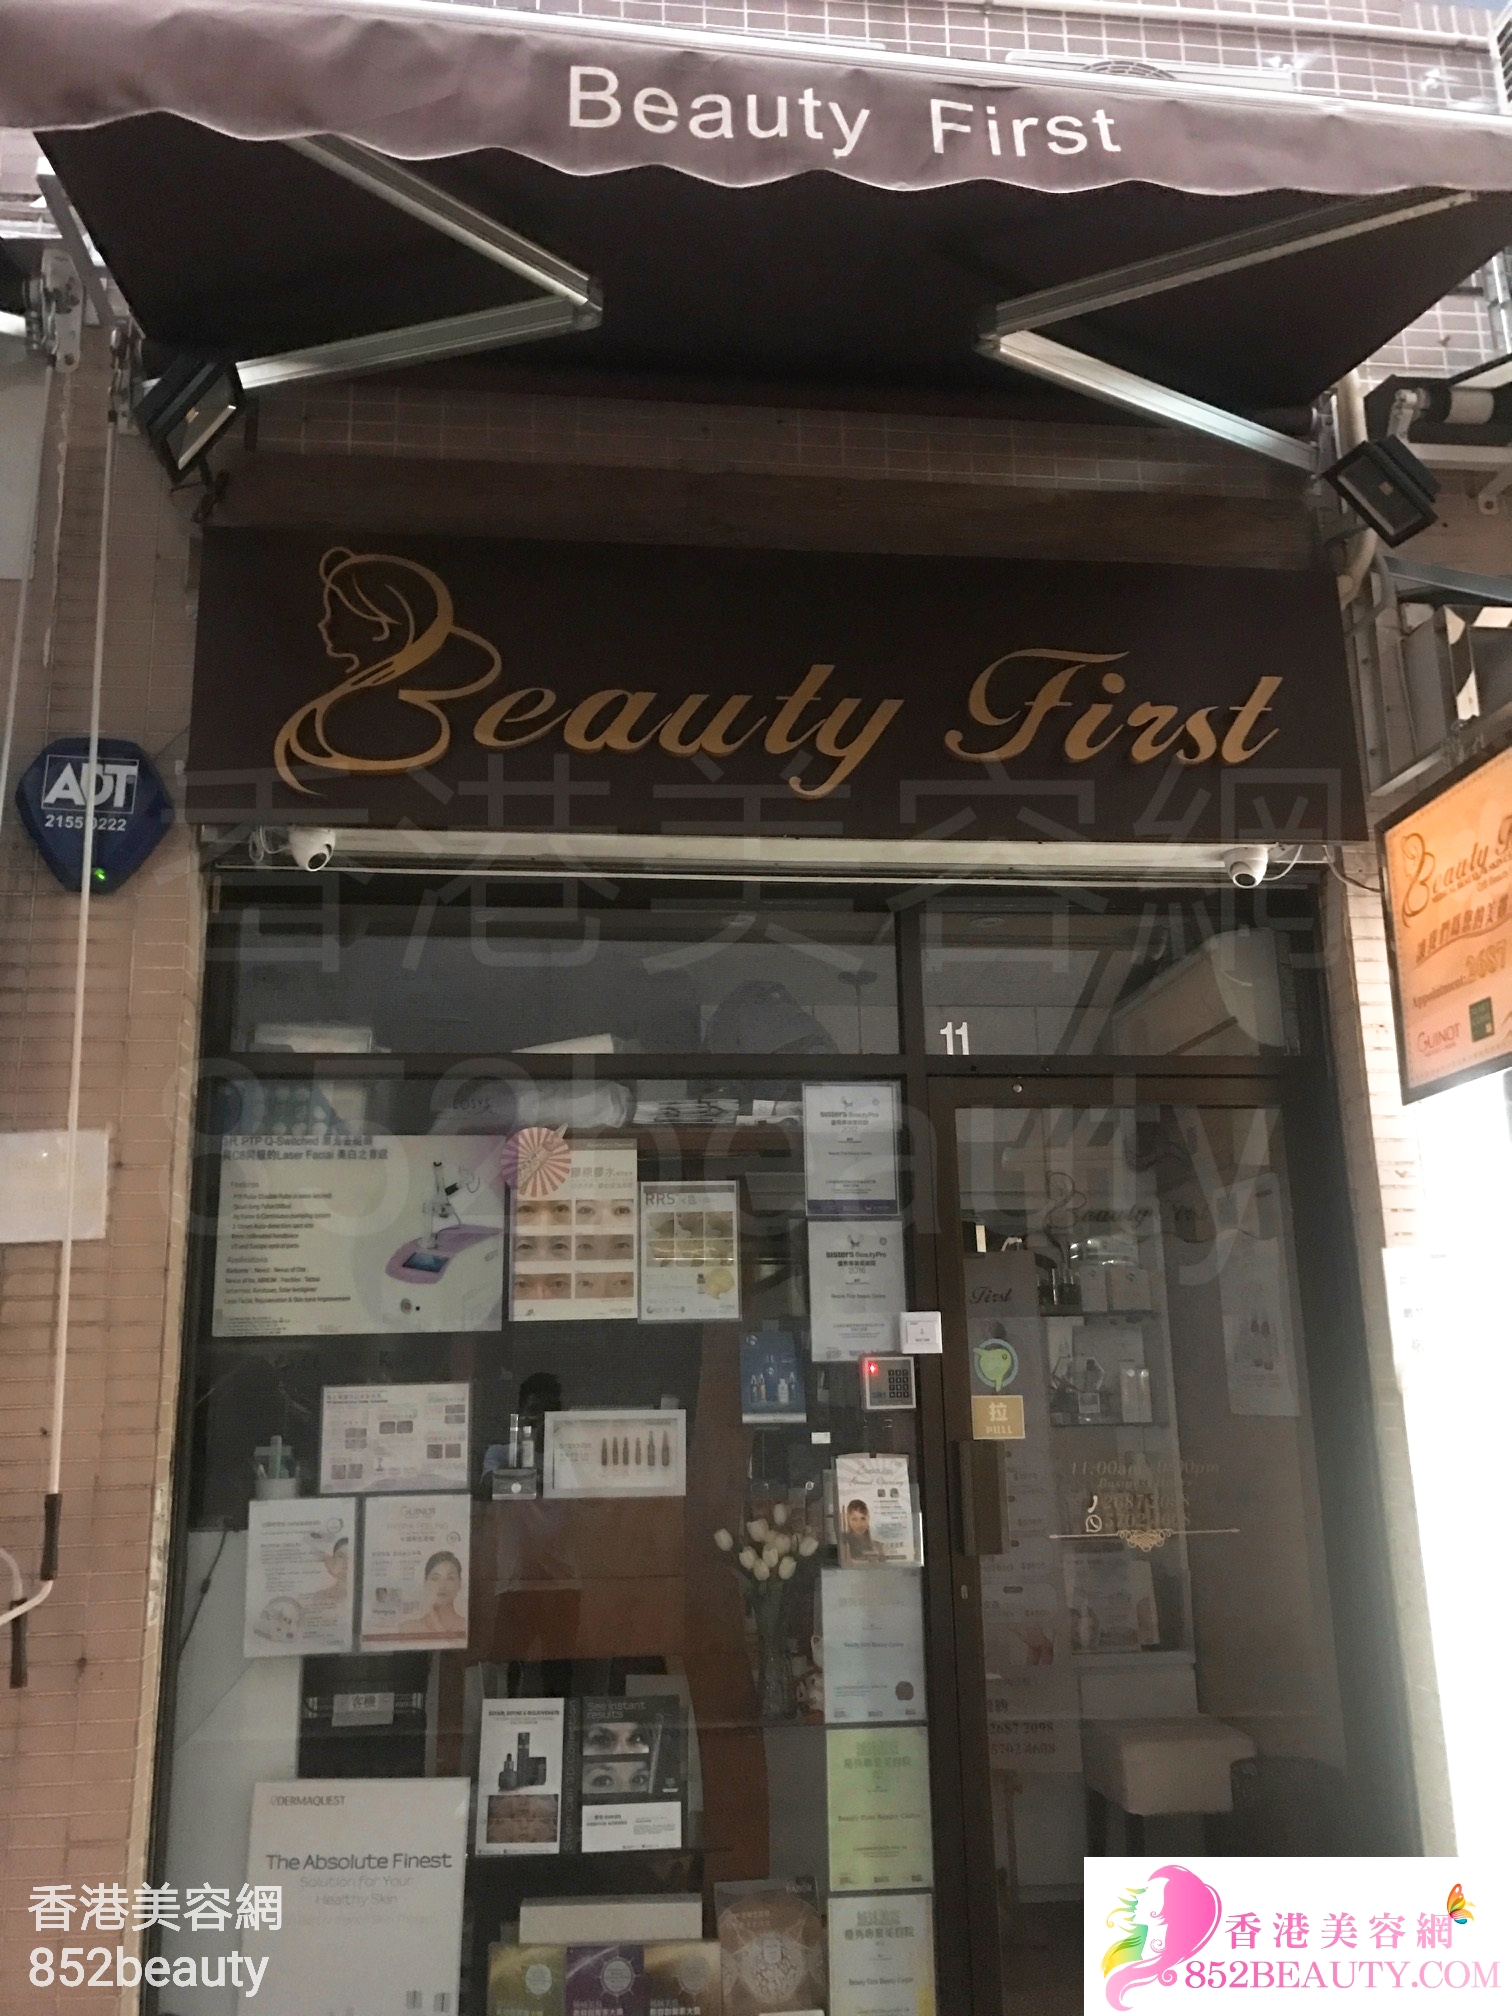 纤体瘦身: Beauty First (美豐花園)